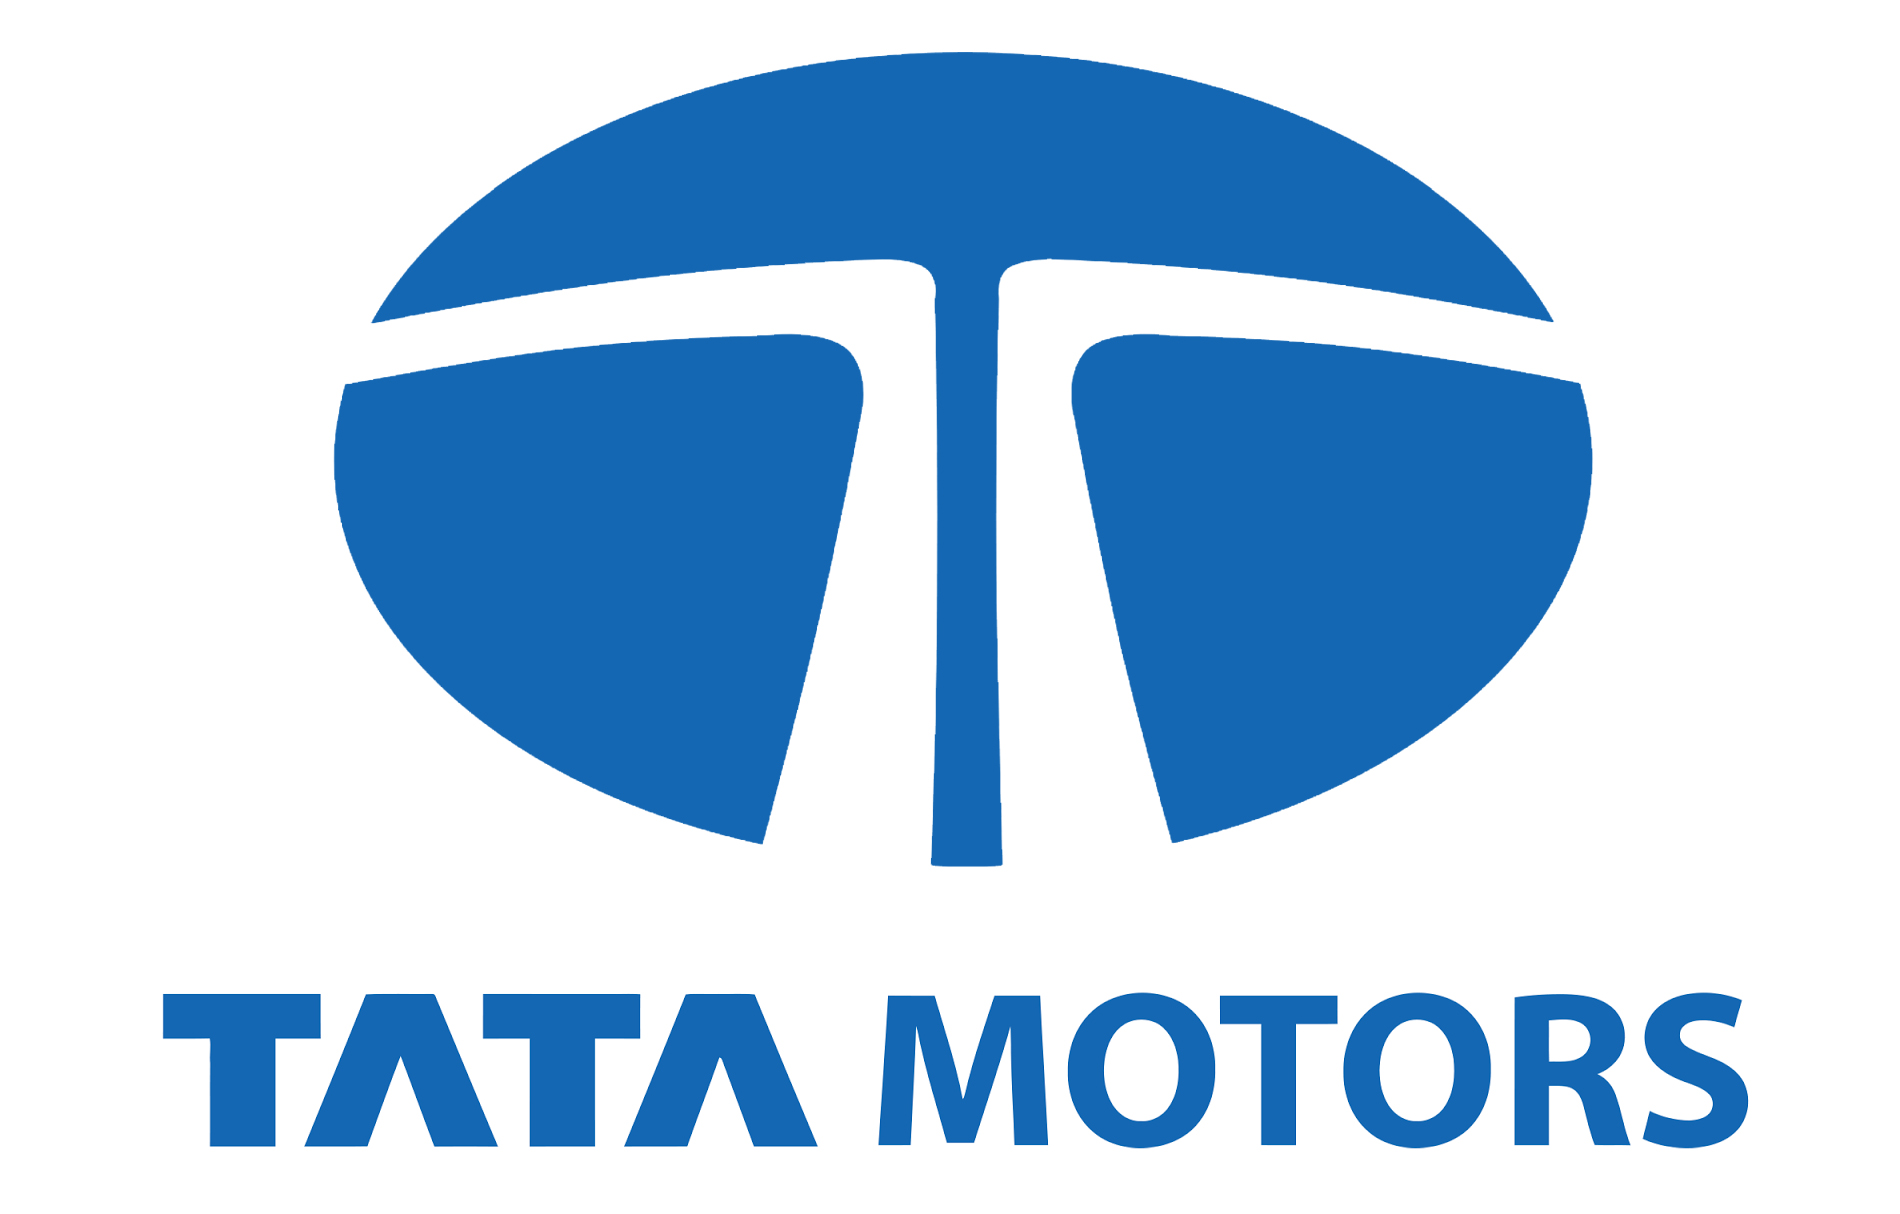 Tata Motors Cars Showroom - Unity Motors Pvt Ltd|Show Room|Automotive